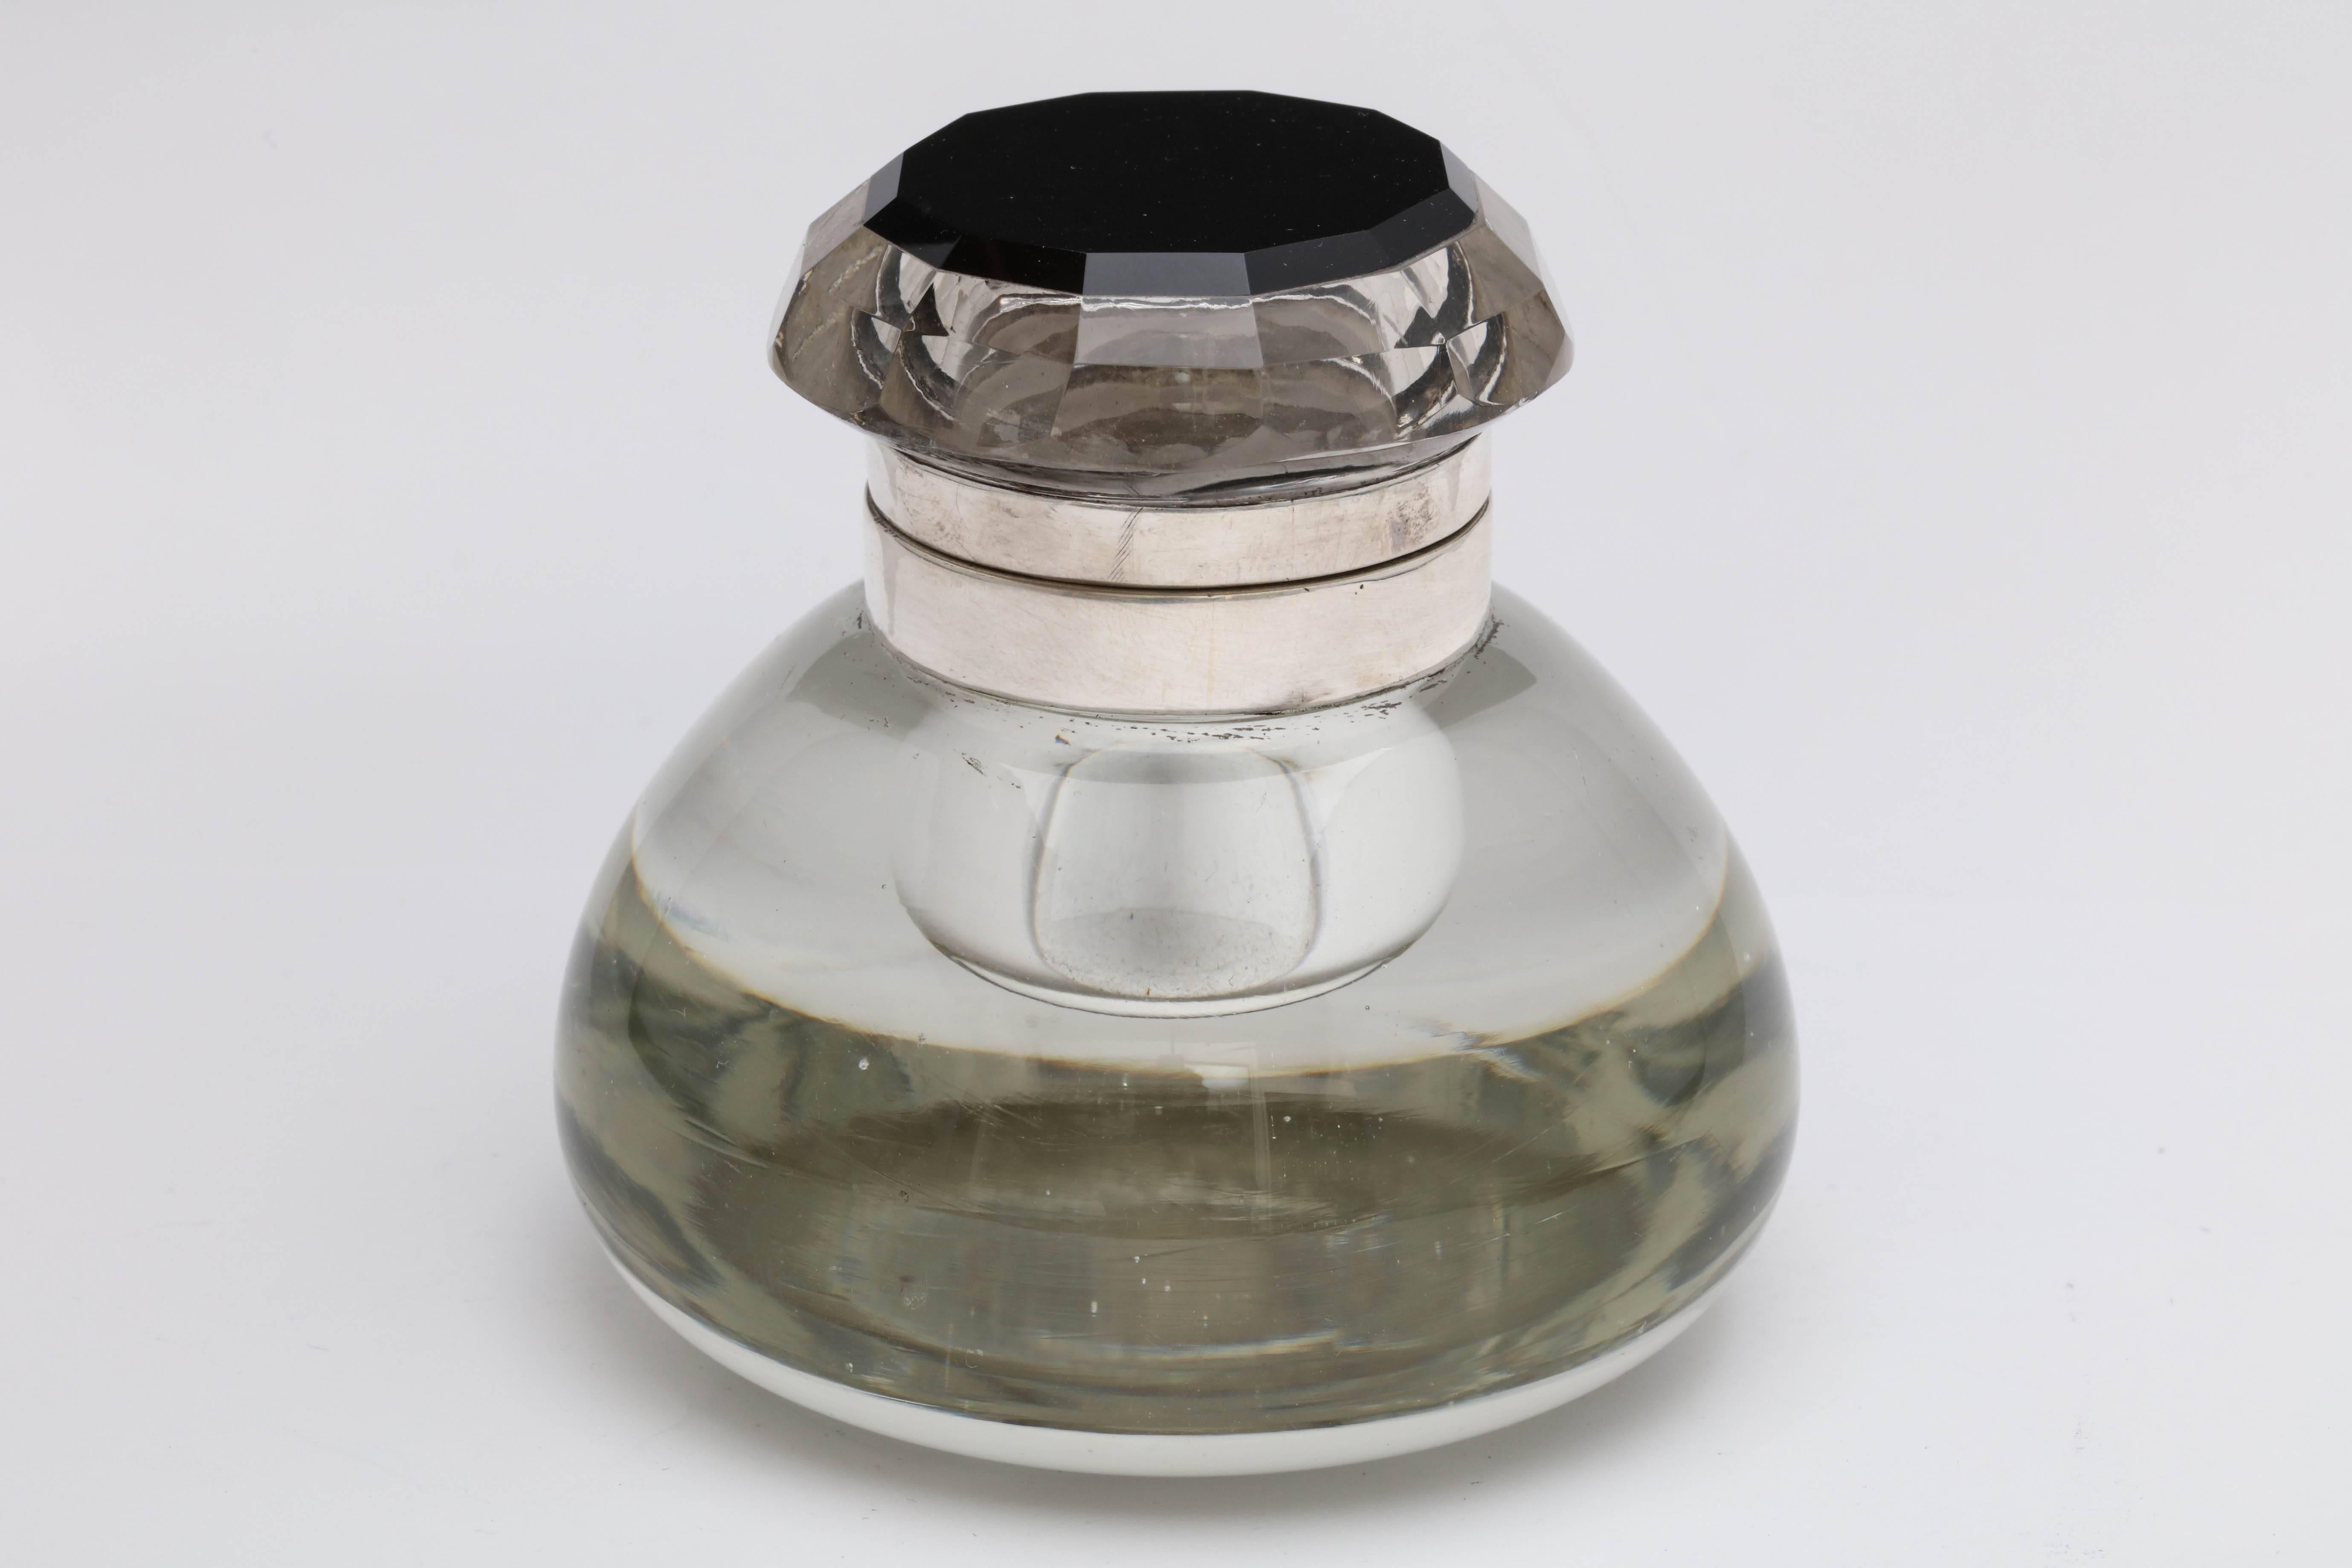 Inhabituel encrier en cristal à charnière monté sur argent sterling et onyx noir, américain, vers les années 1920-1930. le couvercle en cristal clair à 12 facettes est monté par une pièce d'onyx noir à 12 facettes. La partie inférieure du couvercle